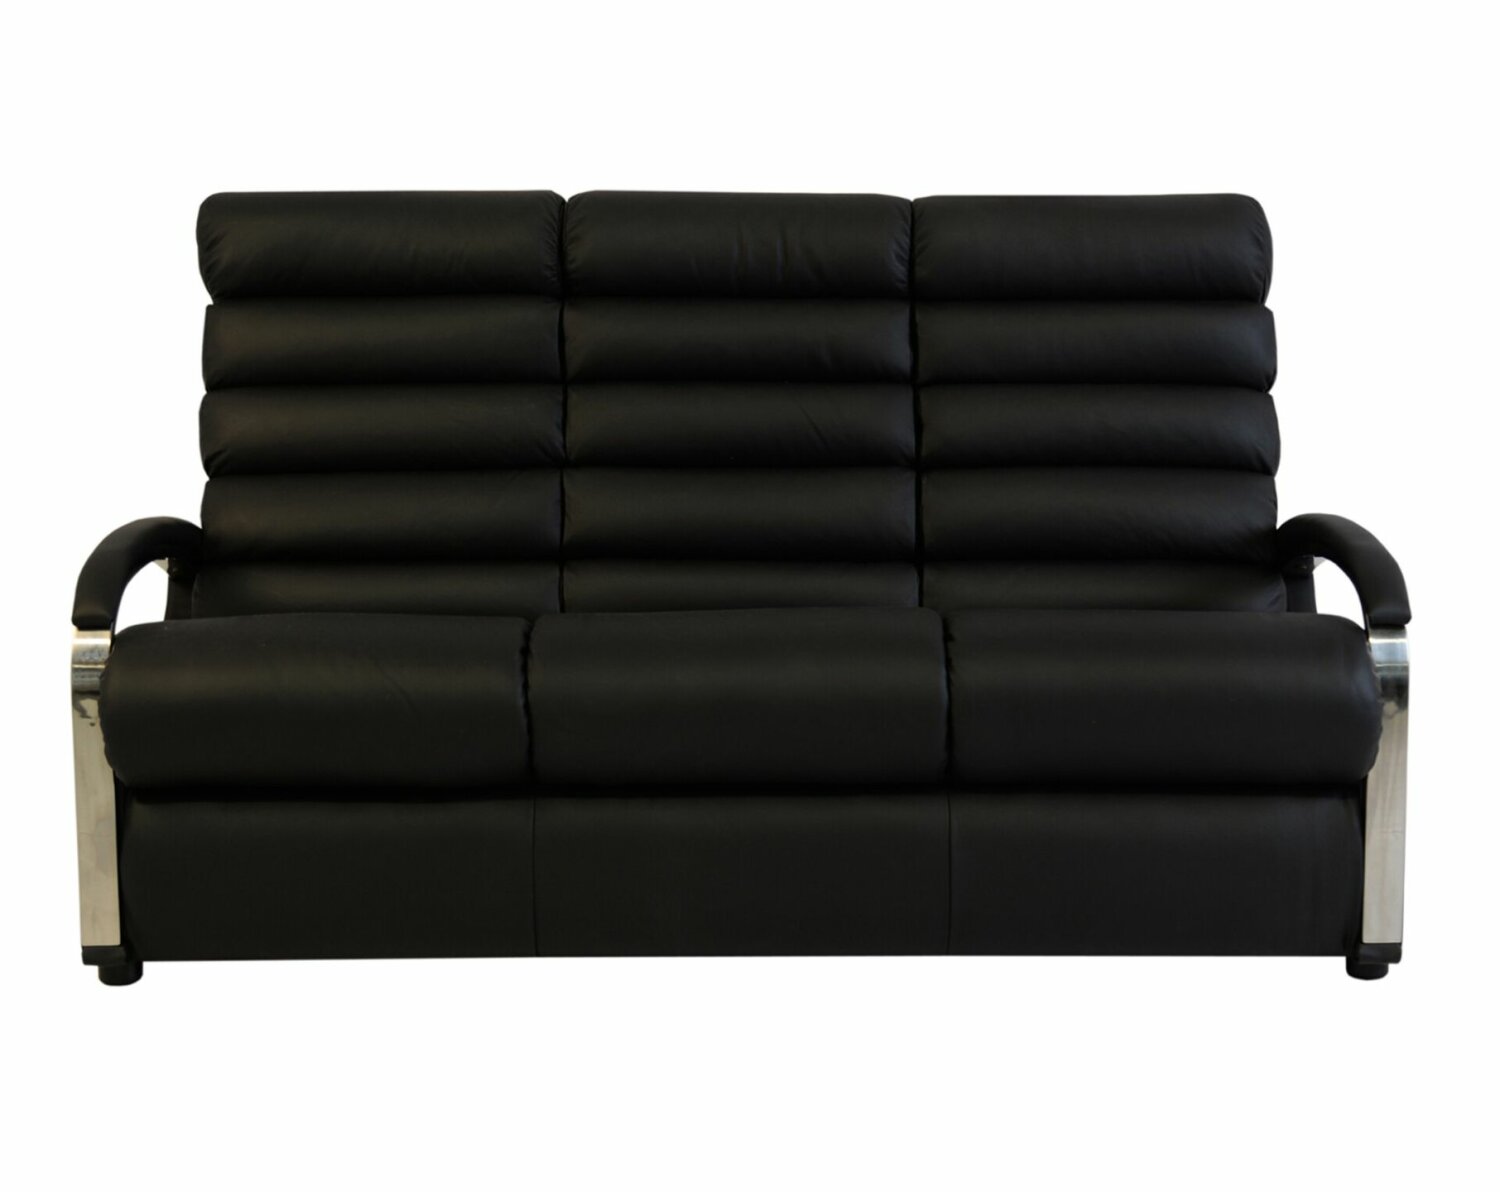 Anika La-Z-Boy 3 Seater Sofa